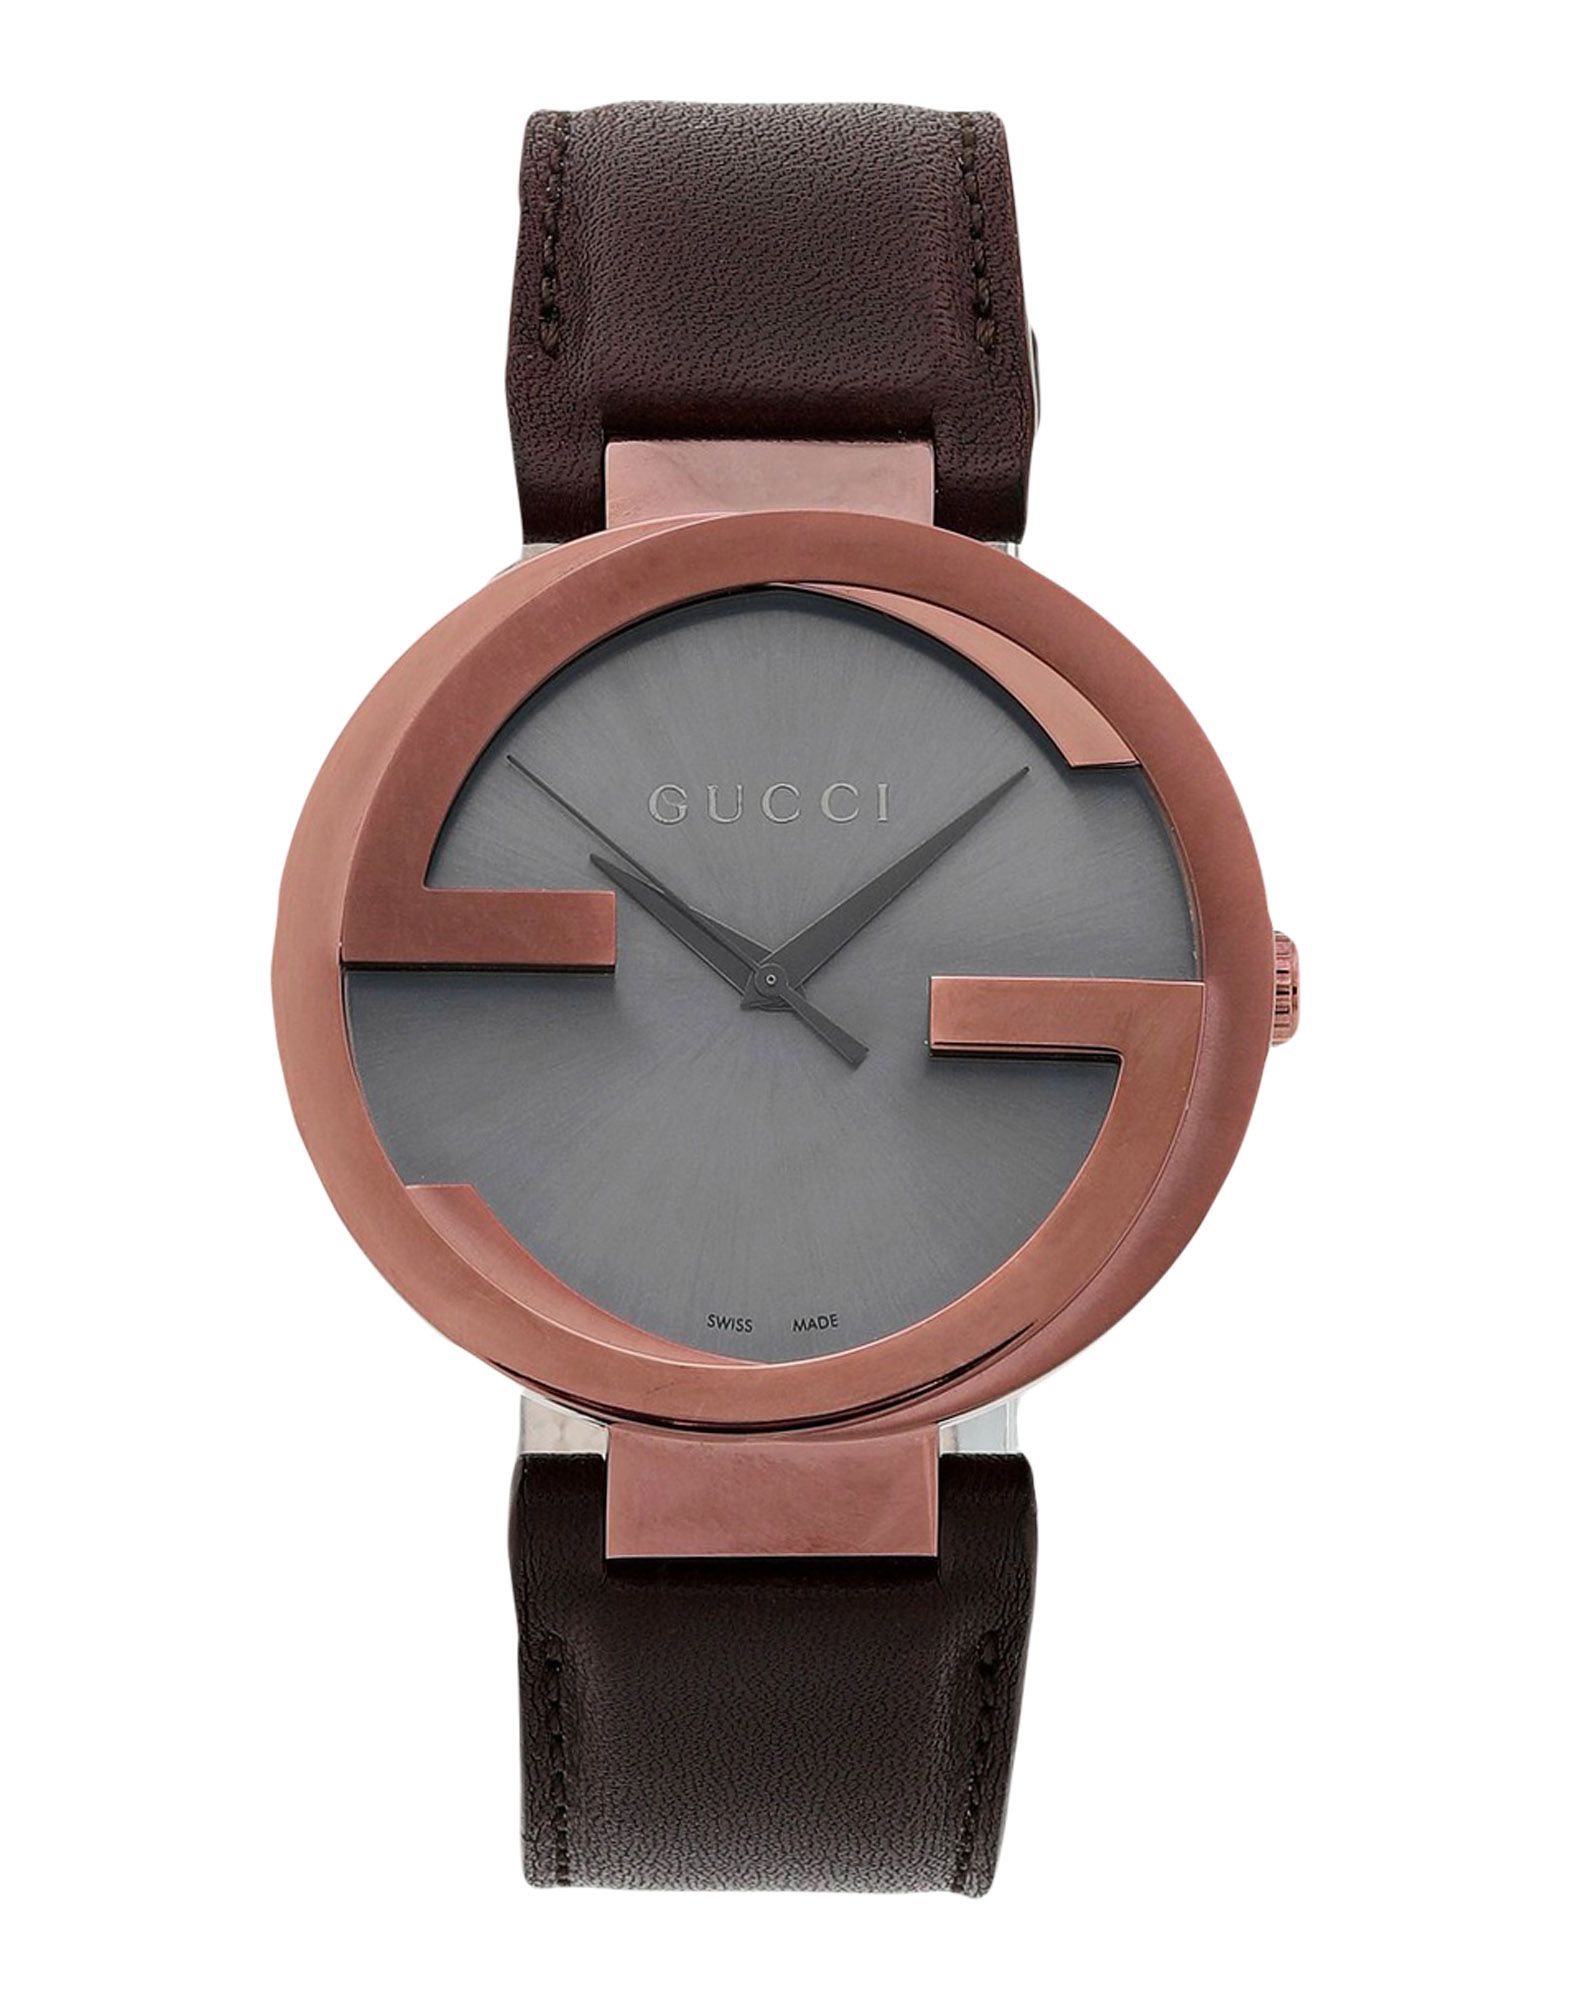 《送料無料》GUCCI Unisex 腕時計 グレー ステンレススチール / 革